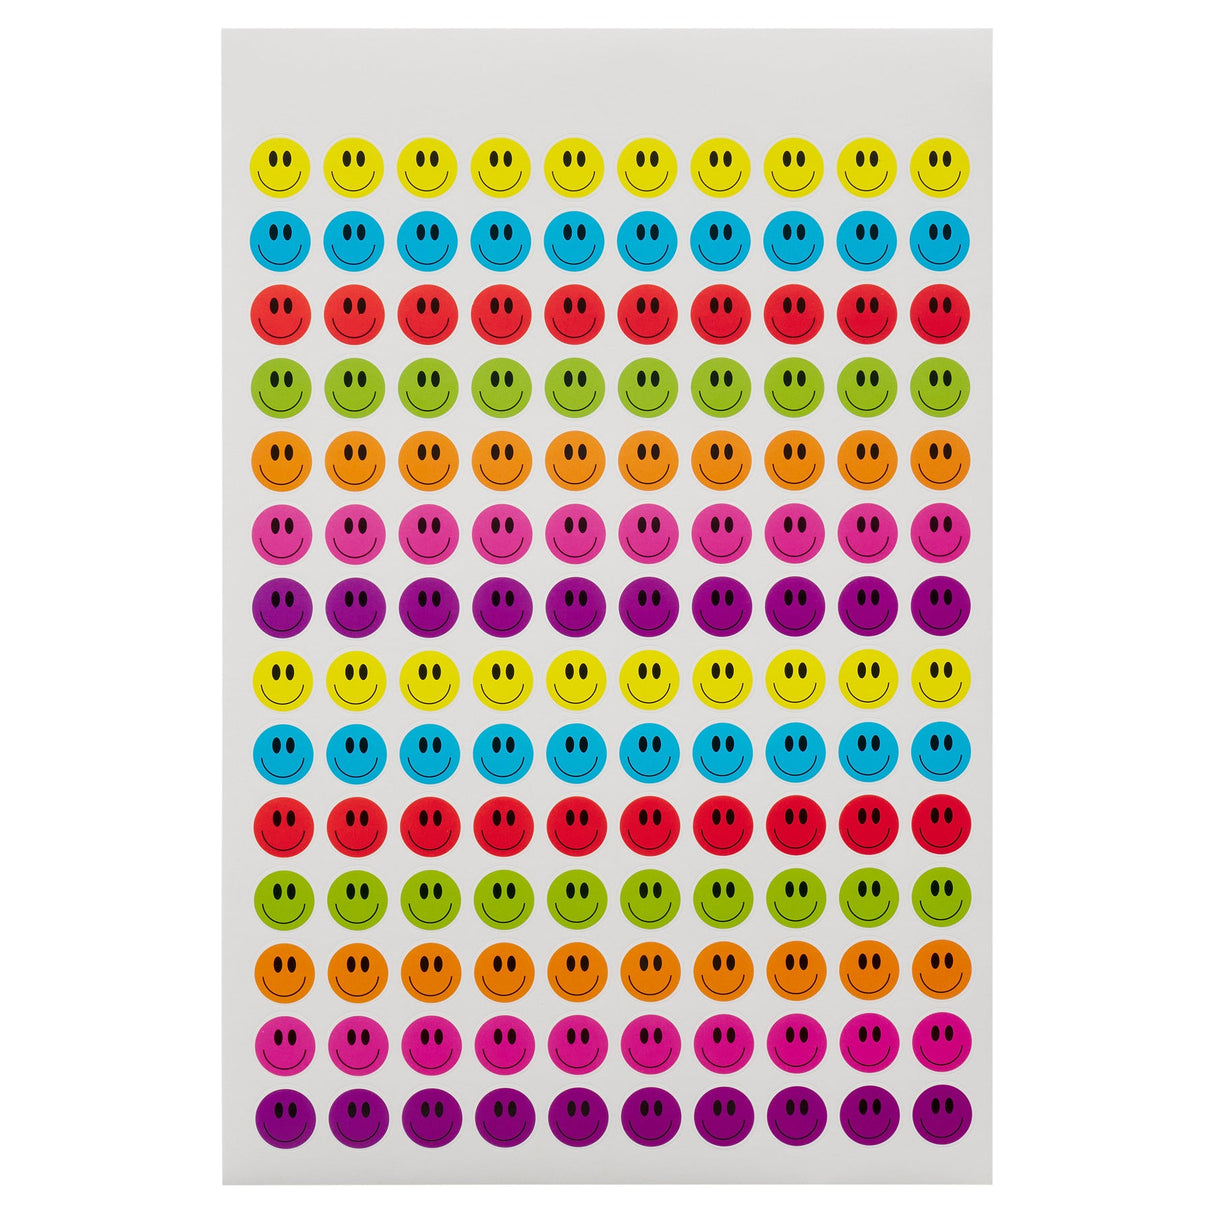 Clever Kidz Reward Sticker Pad - 1000+ Stickers-Reward Stickers-Clever Kidz|StationeryShop.co.uk